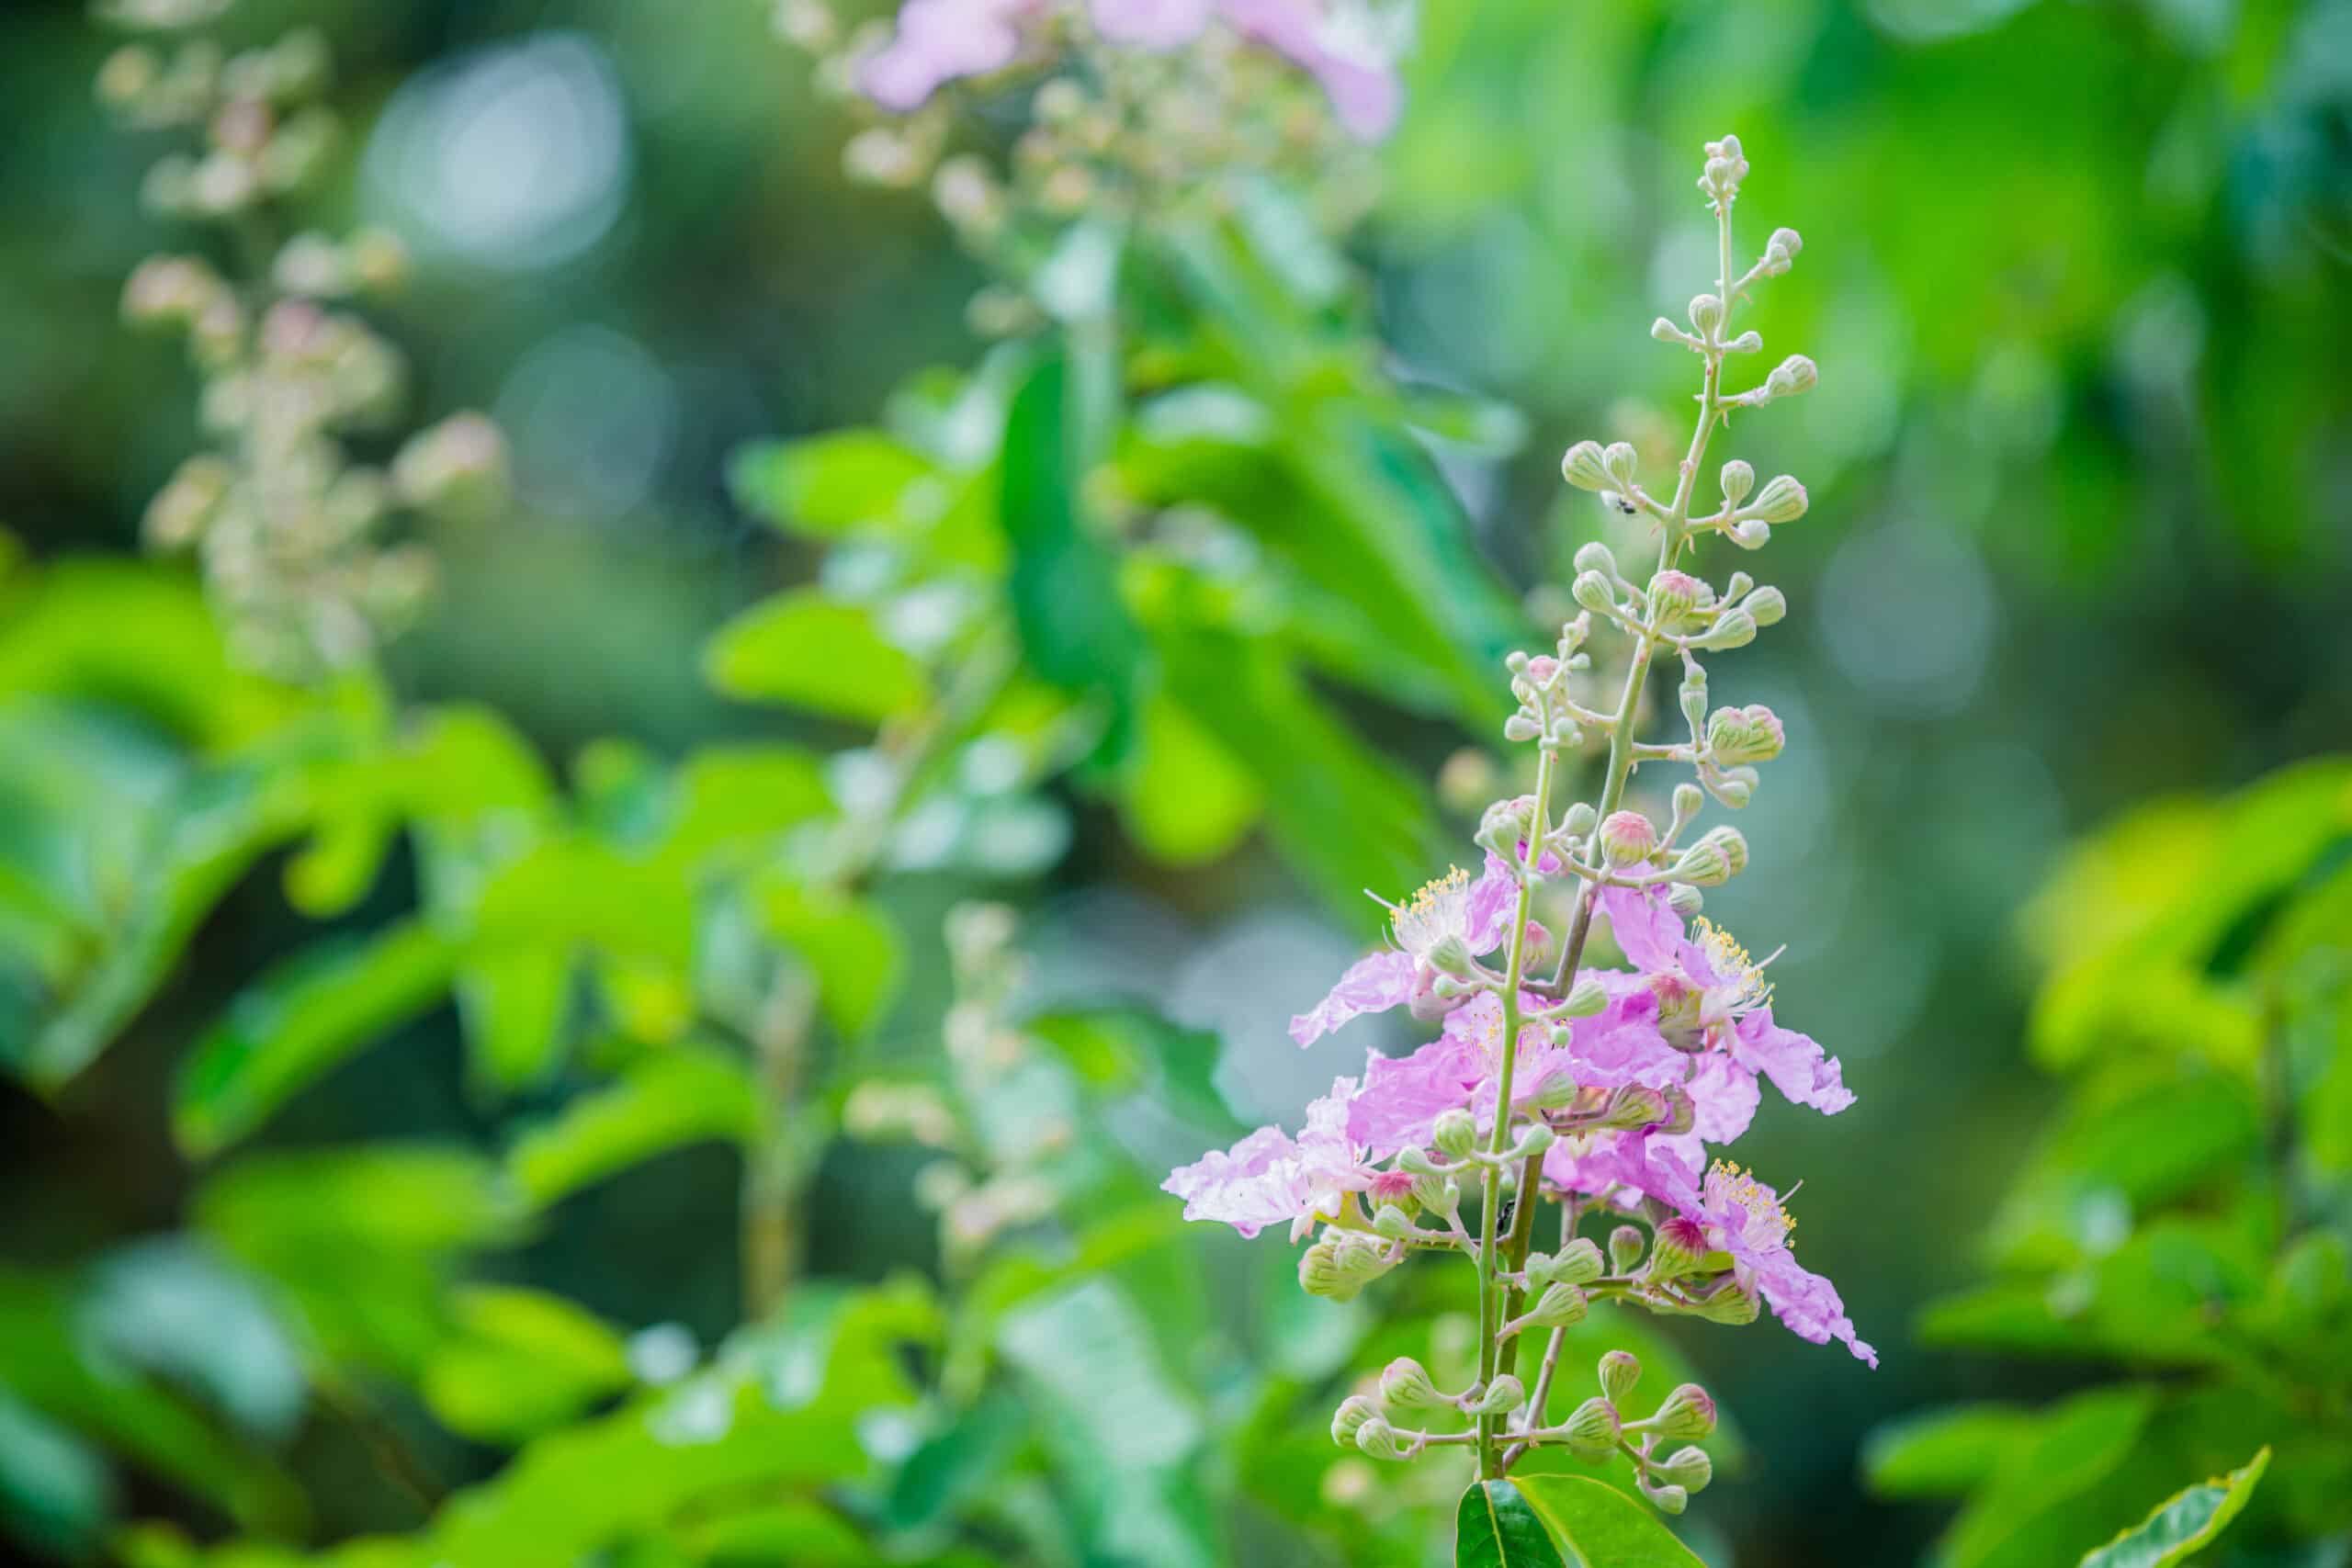  ინდიგო: აღმოაჩინეთ ეს მცენარე, რომელიც ფართოდ გამოიყენება როგორც ბუნებრივი საღებავი